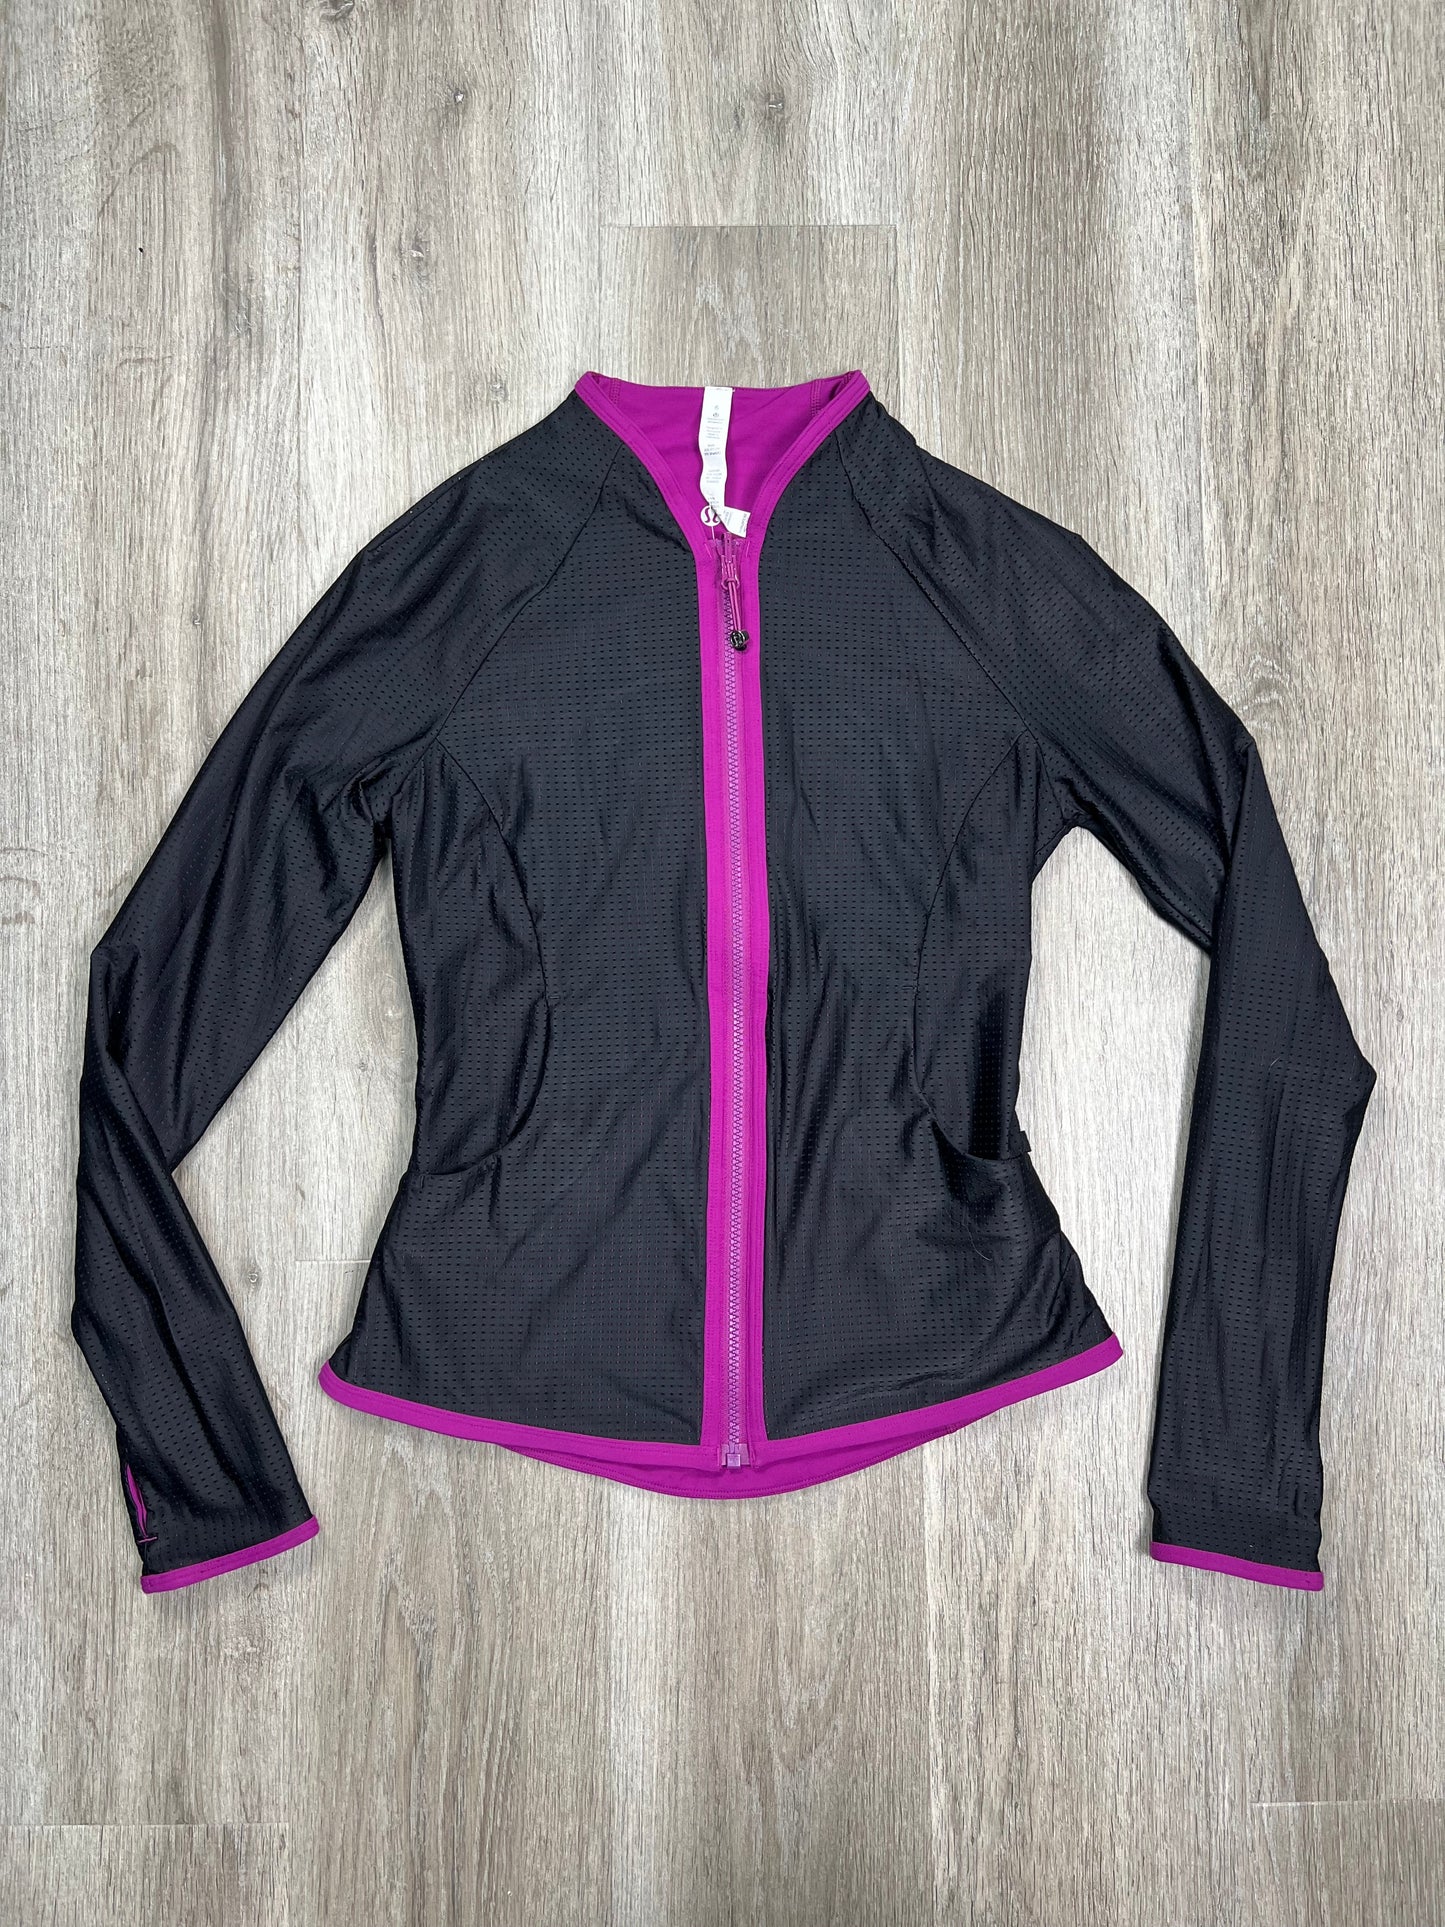 Purple Athletic Jacket Lululemon, Size S